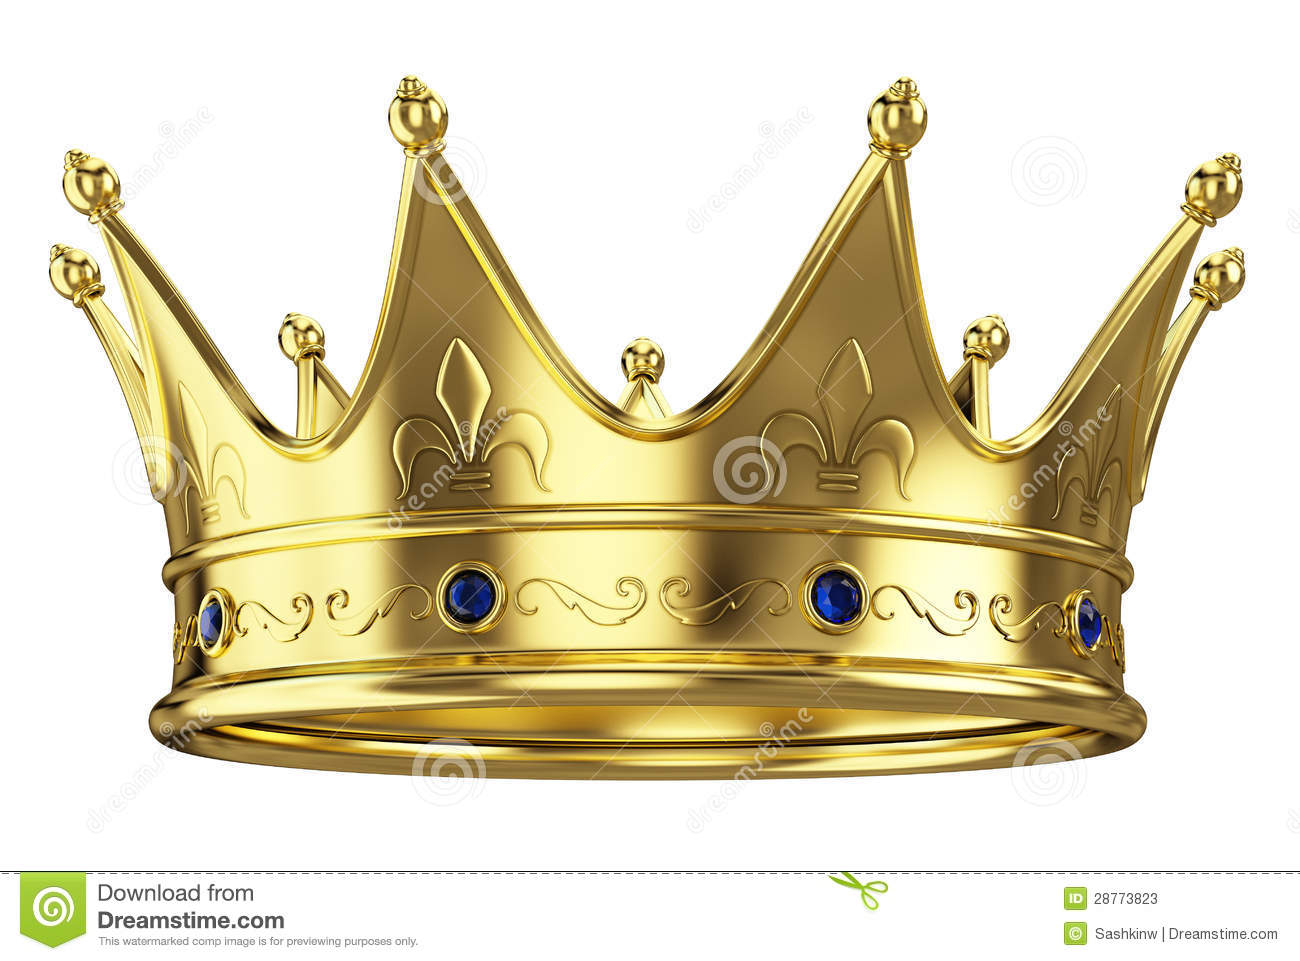 crown image #5